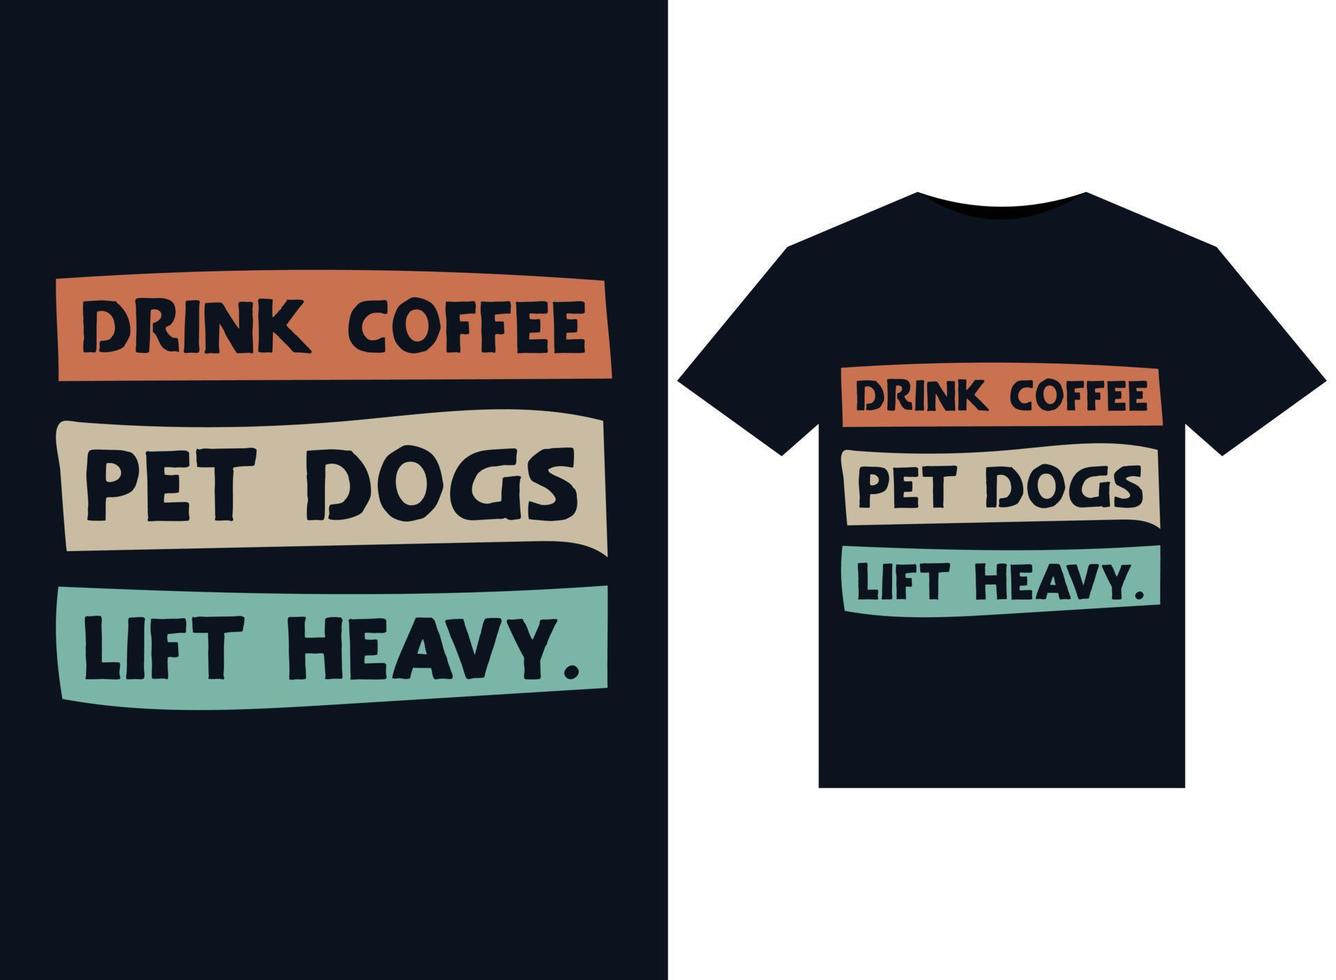 beber café. perros de compañía levantar pesado. ilustraciones para el diseño de camisetas listas para imprimir vector